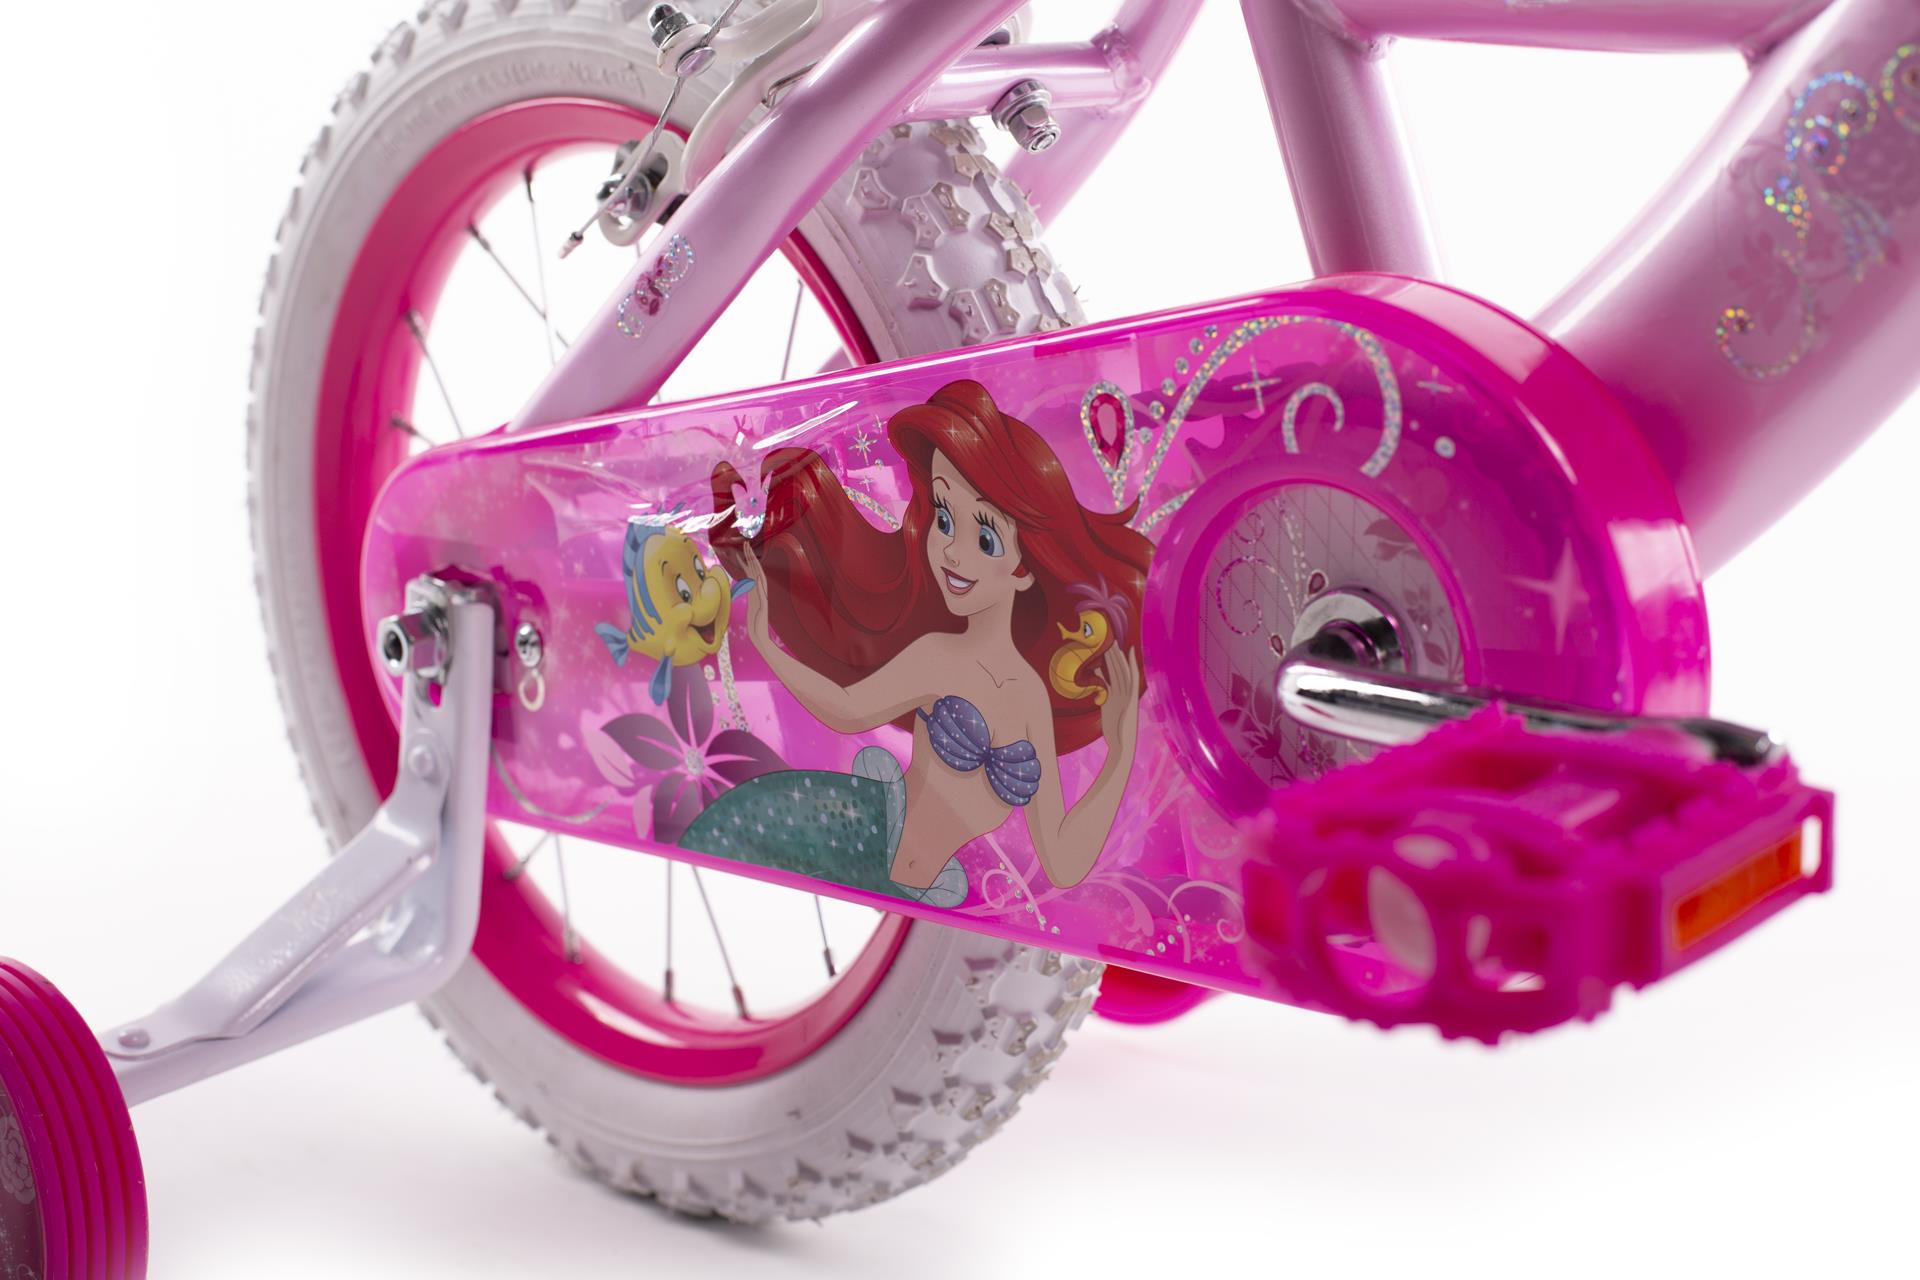 Huffy Princess 14" Bērnu velosipēds